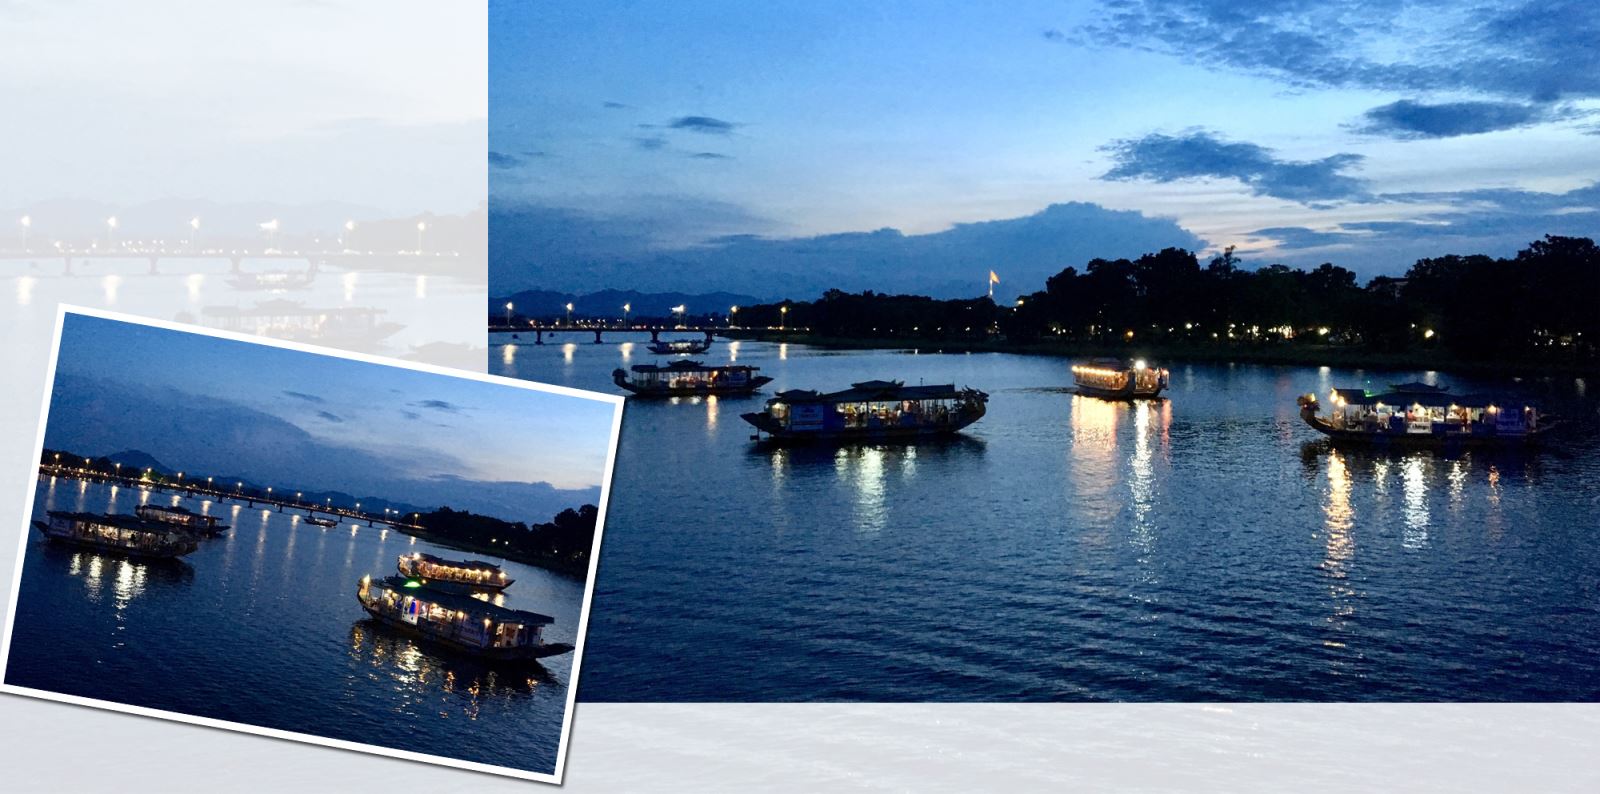 Sông Hương và cầu Tràng Tiền với những chiếc thuyền ca Huế lúc chiều tà.